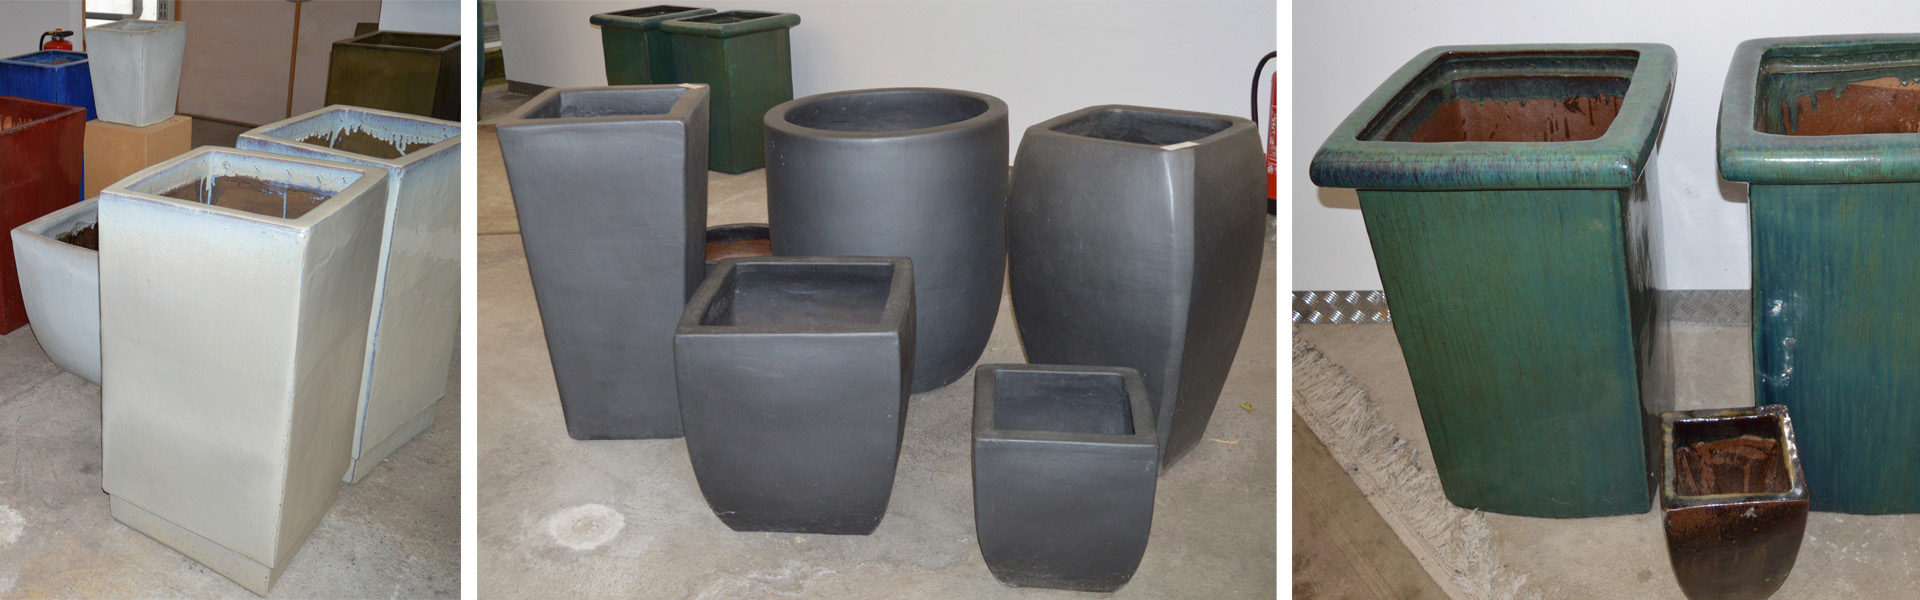 Keramikgefäße in verschiedenen Formen, Größen und Farben. Für Bepflanzungen in indoor/outdoor Bereichen geeignet.